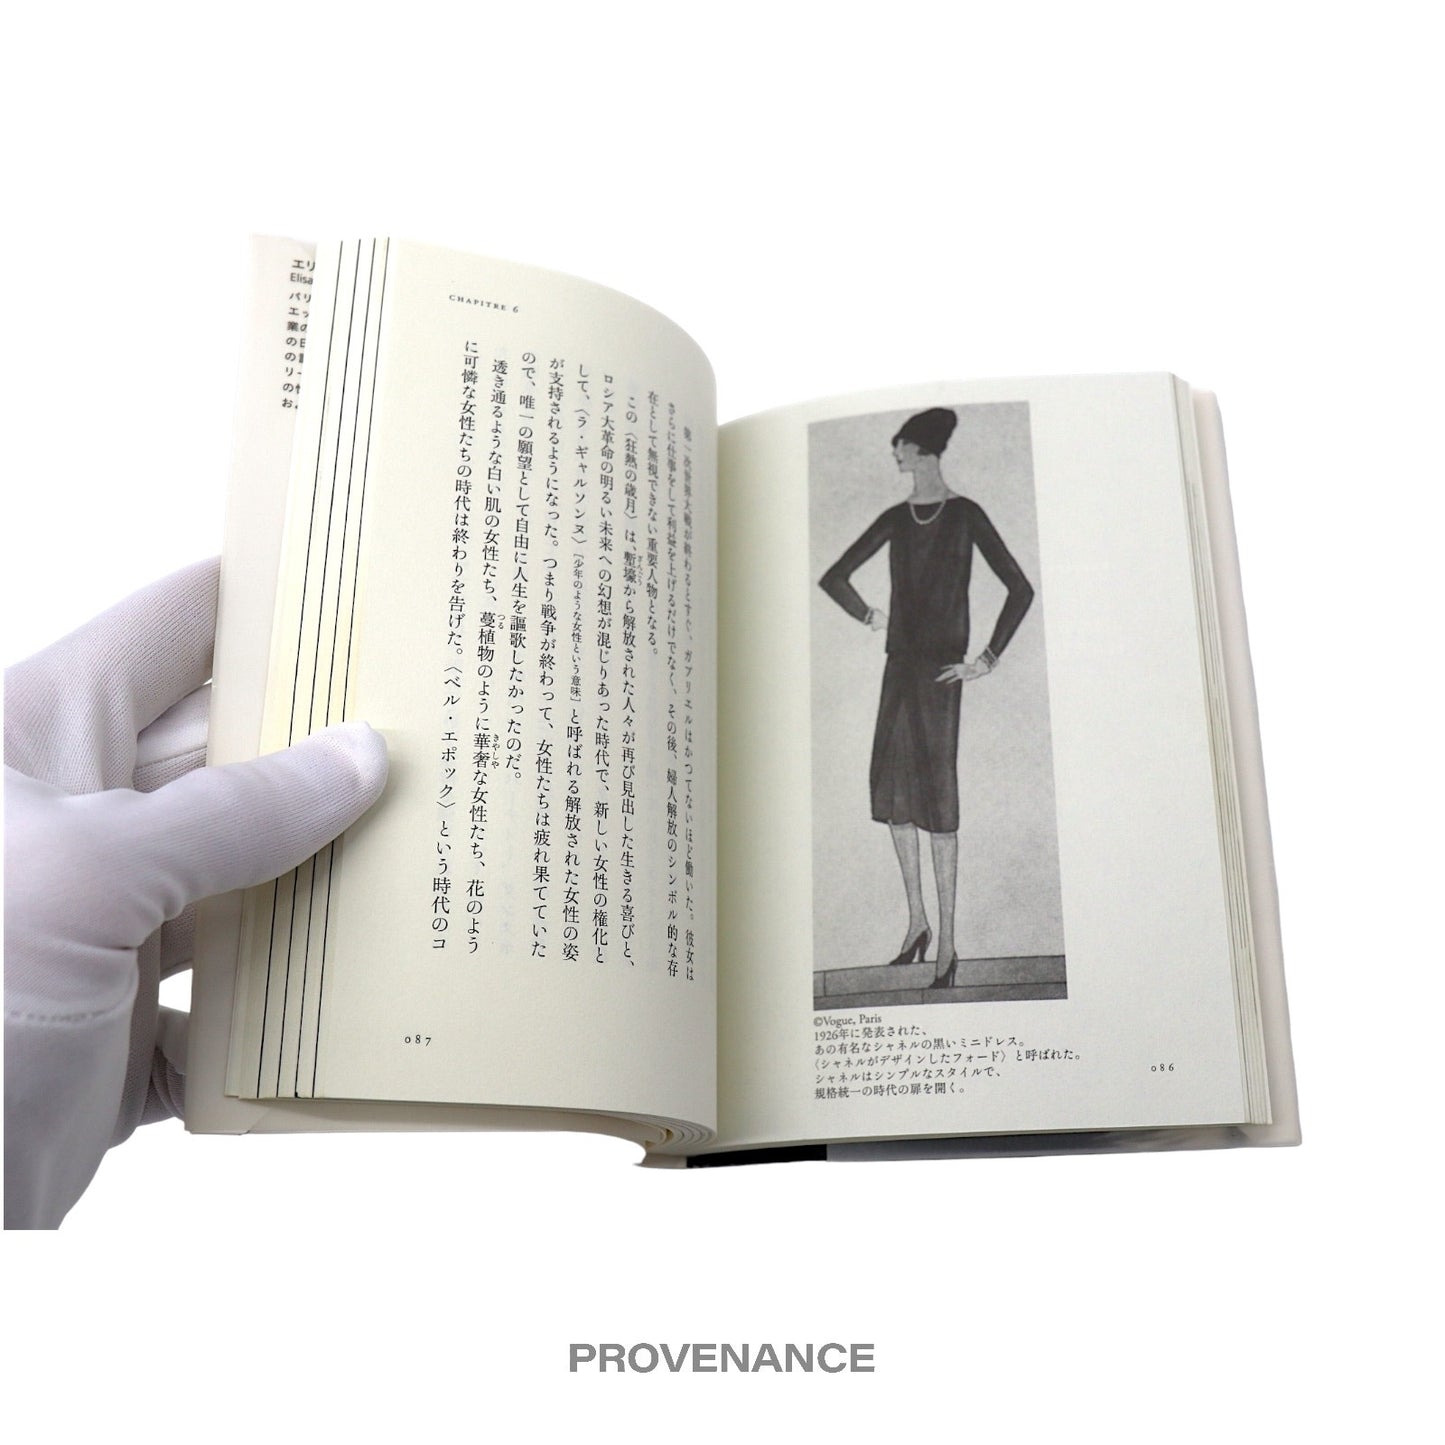 🔴 Figaro Coco Chanel Book